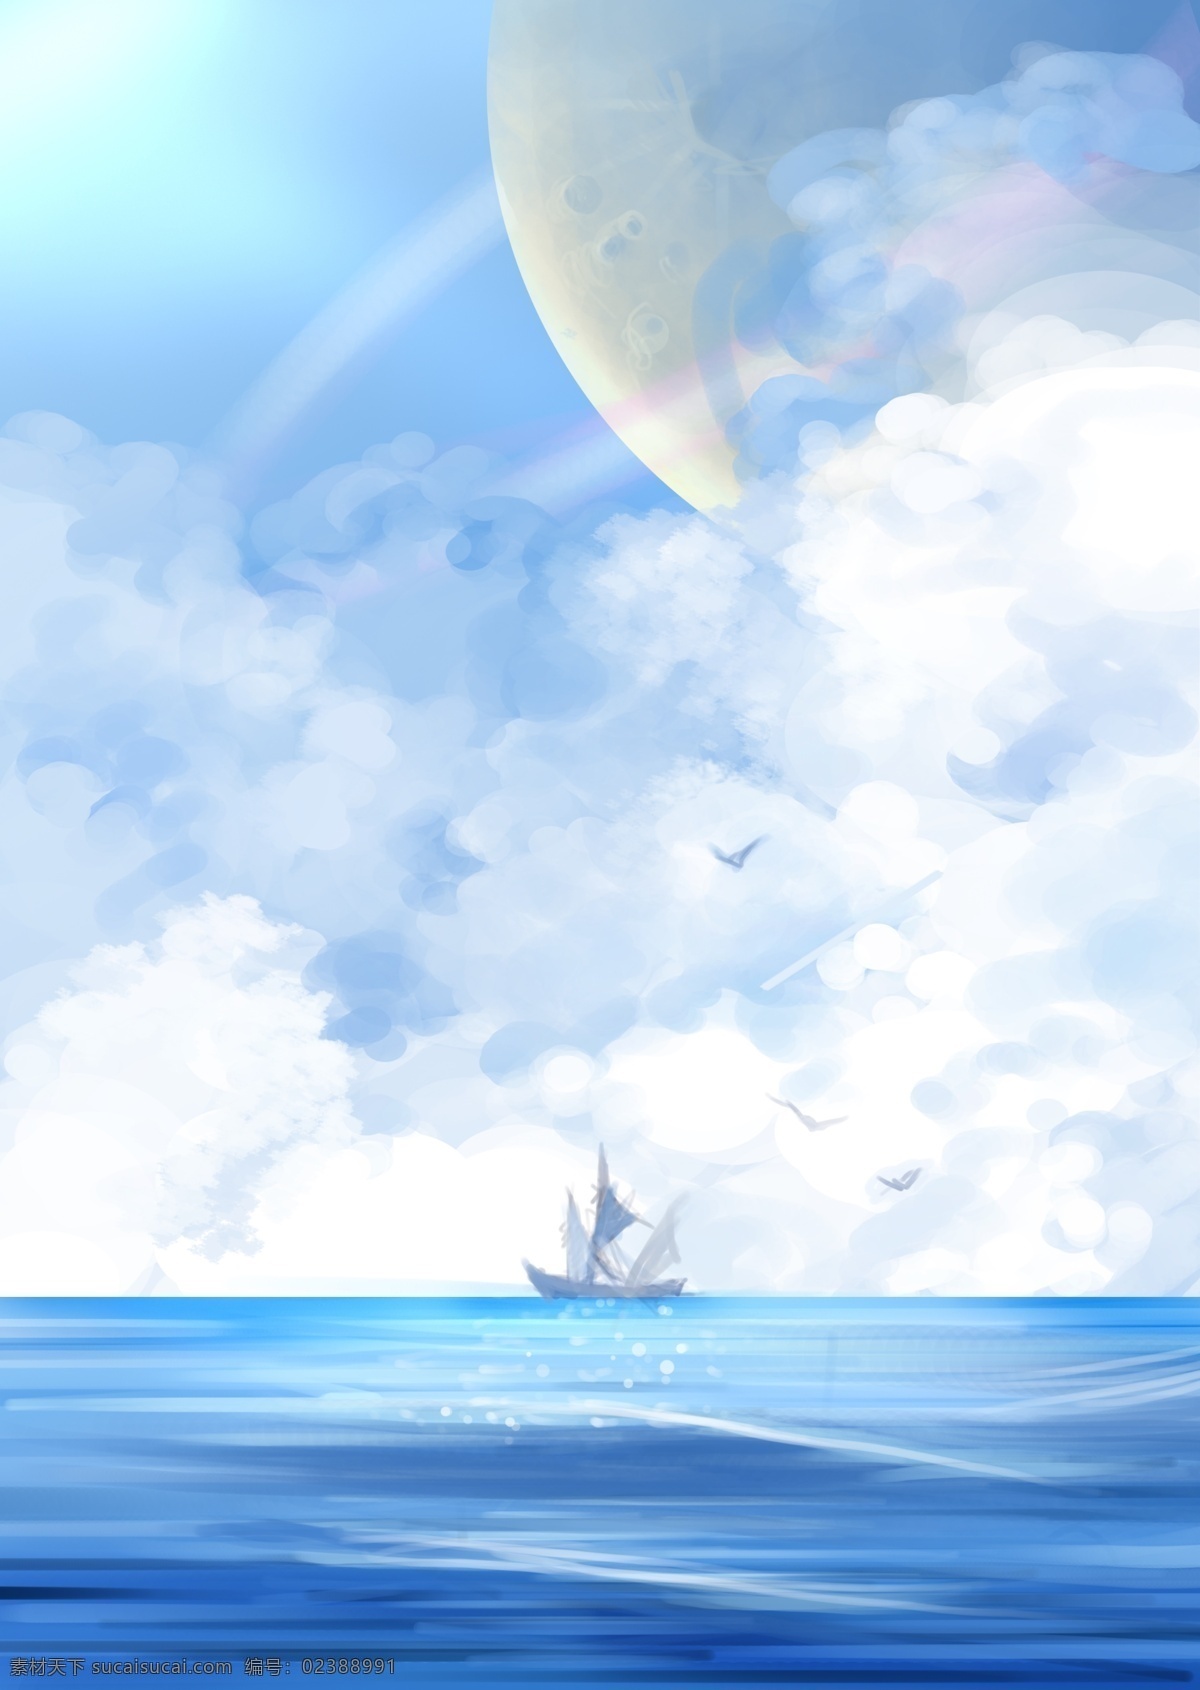 日月星空 海插画 日月 海洋 云海 云朵 船只 飞鸟 船 广告设计模板 源文件